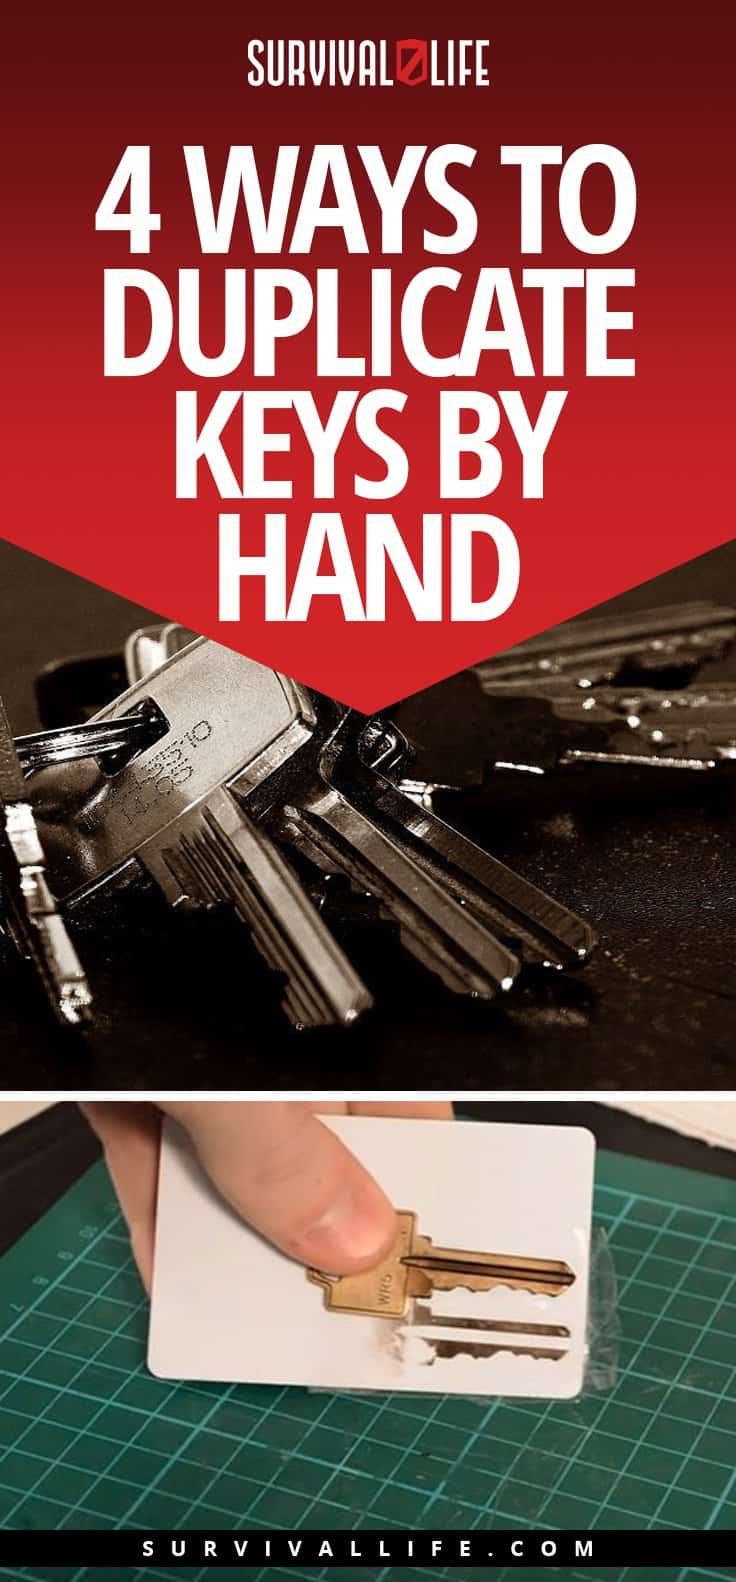 Modalități de a duplica cheile de mână | 